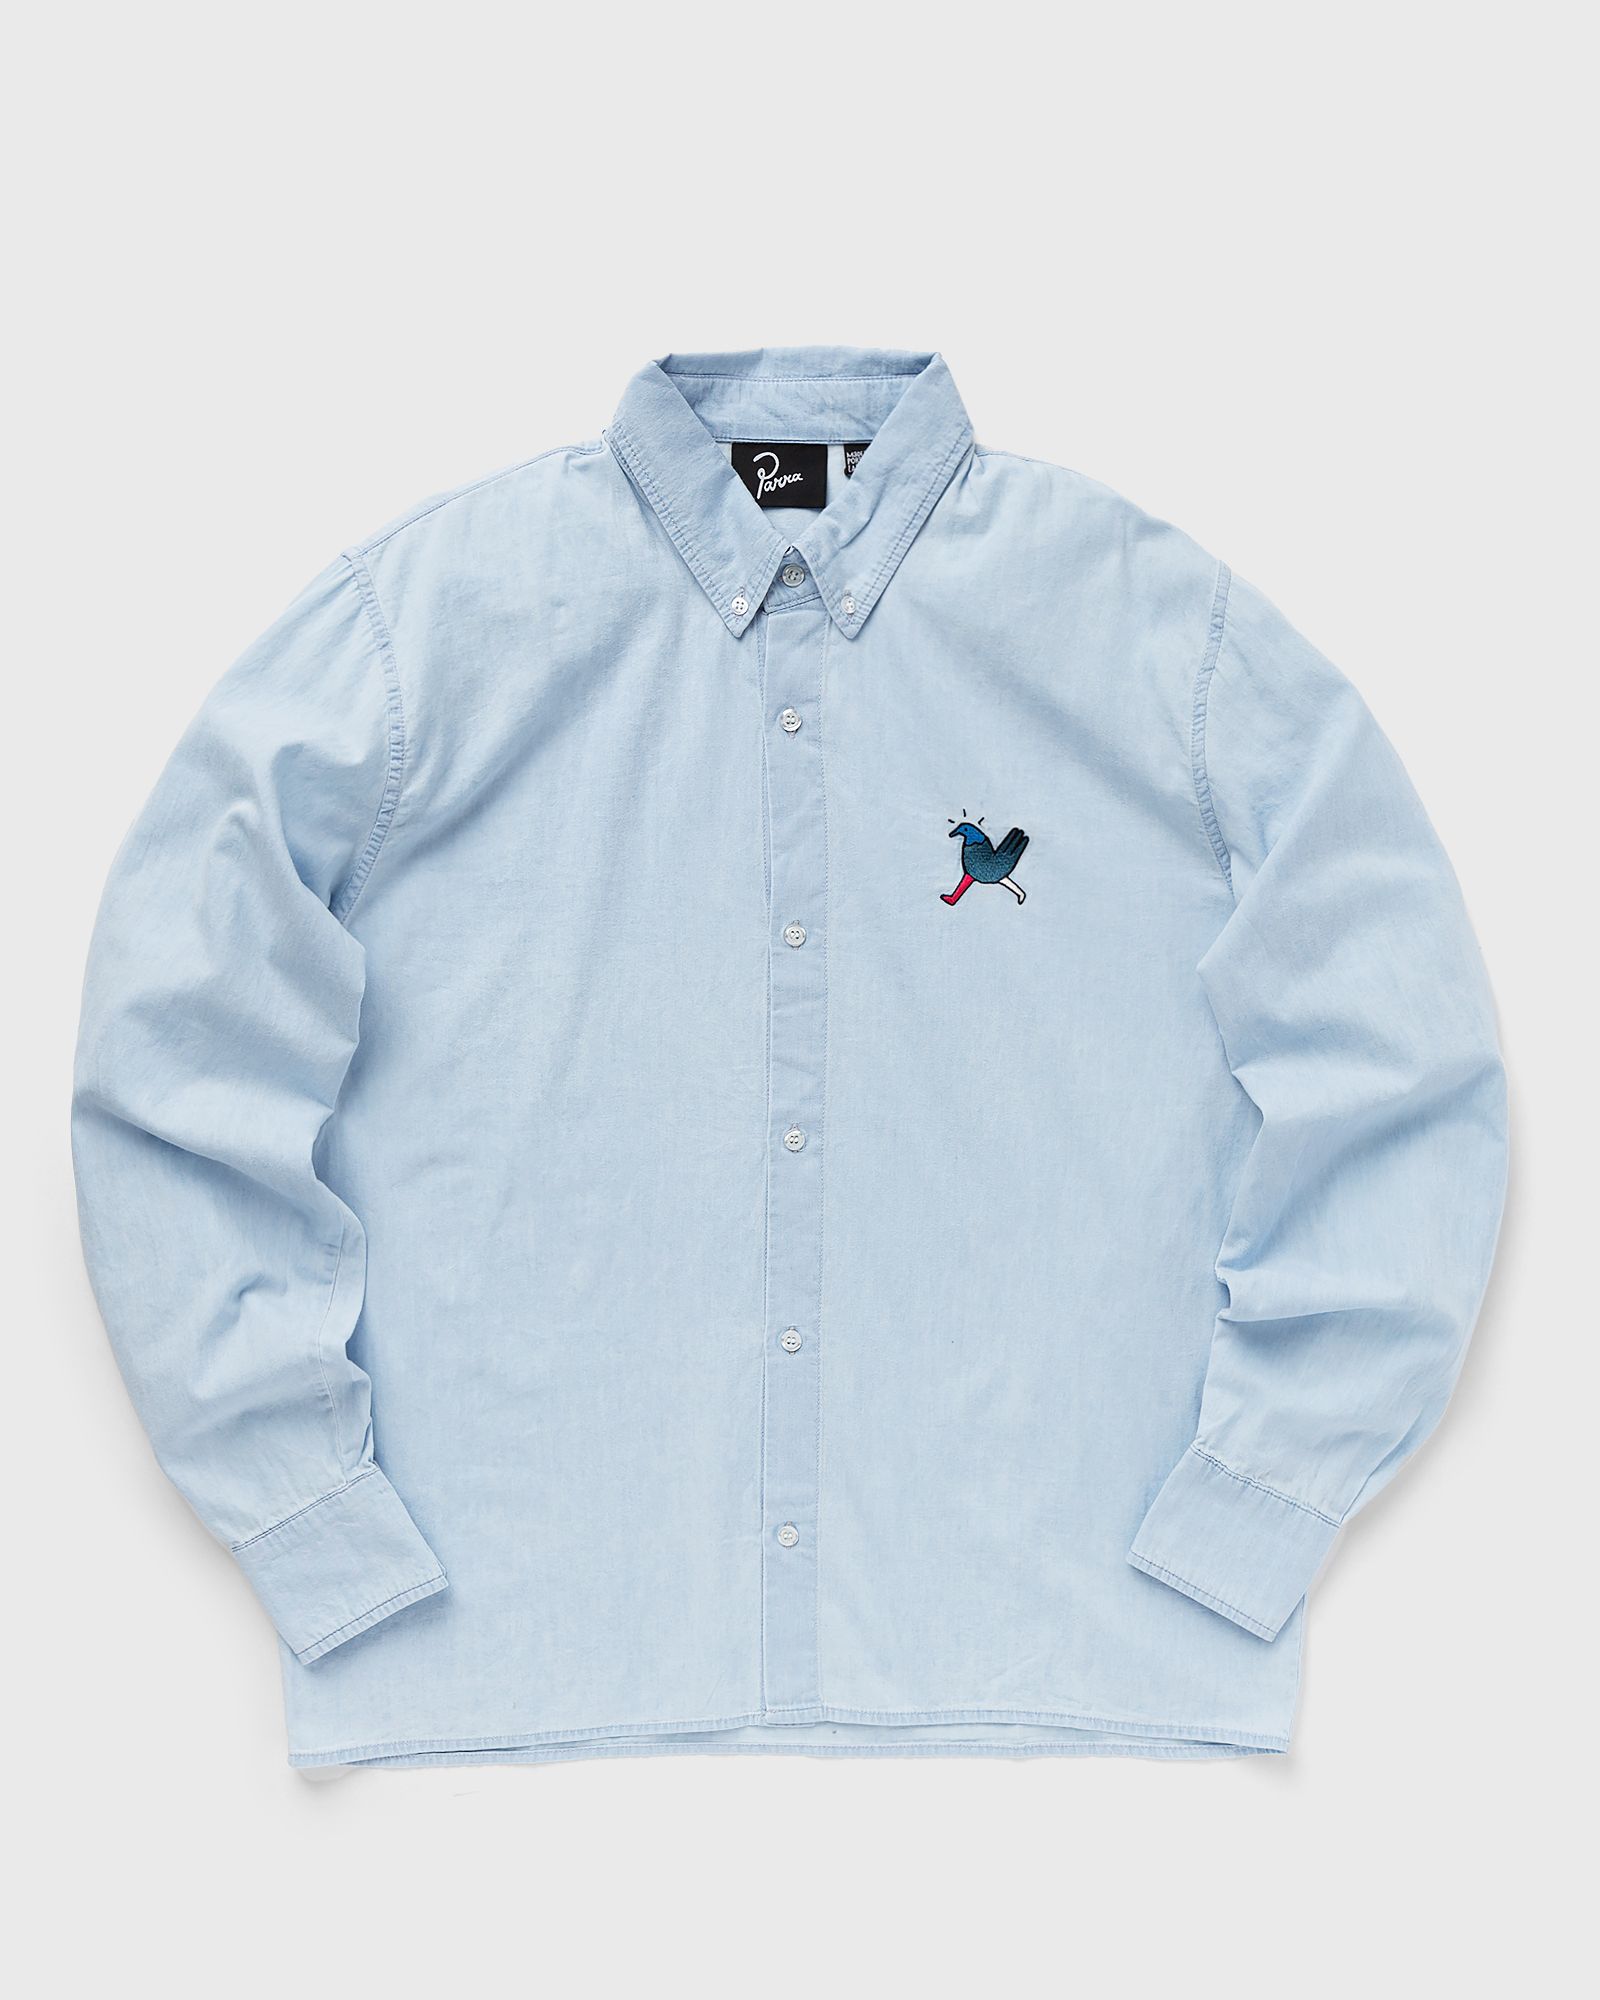 By Parra - annoyed chicken shirt men longsleeves blue in größe:xl